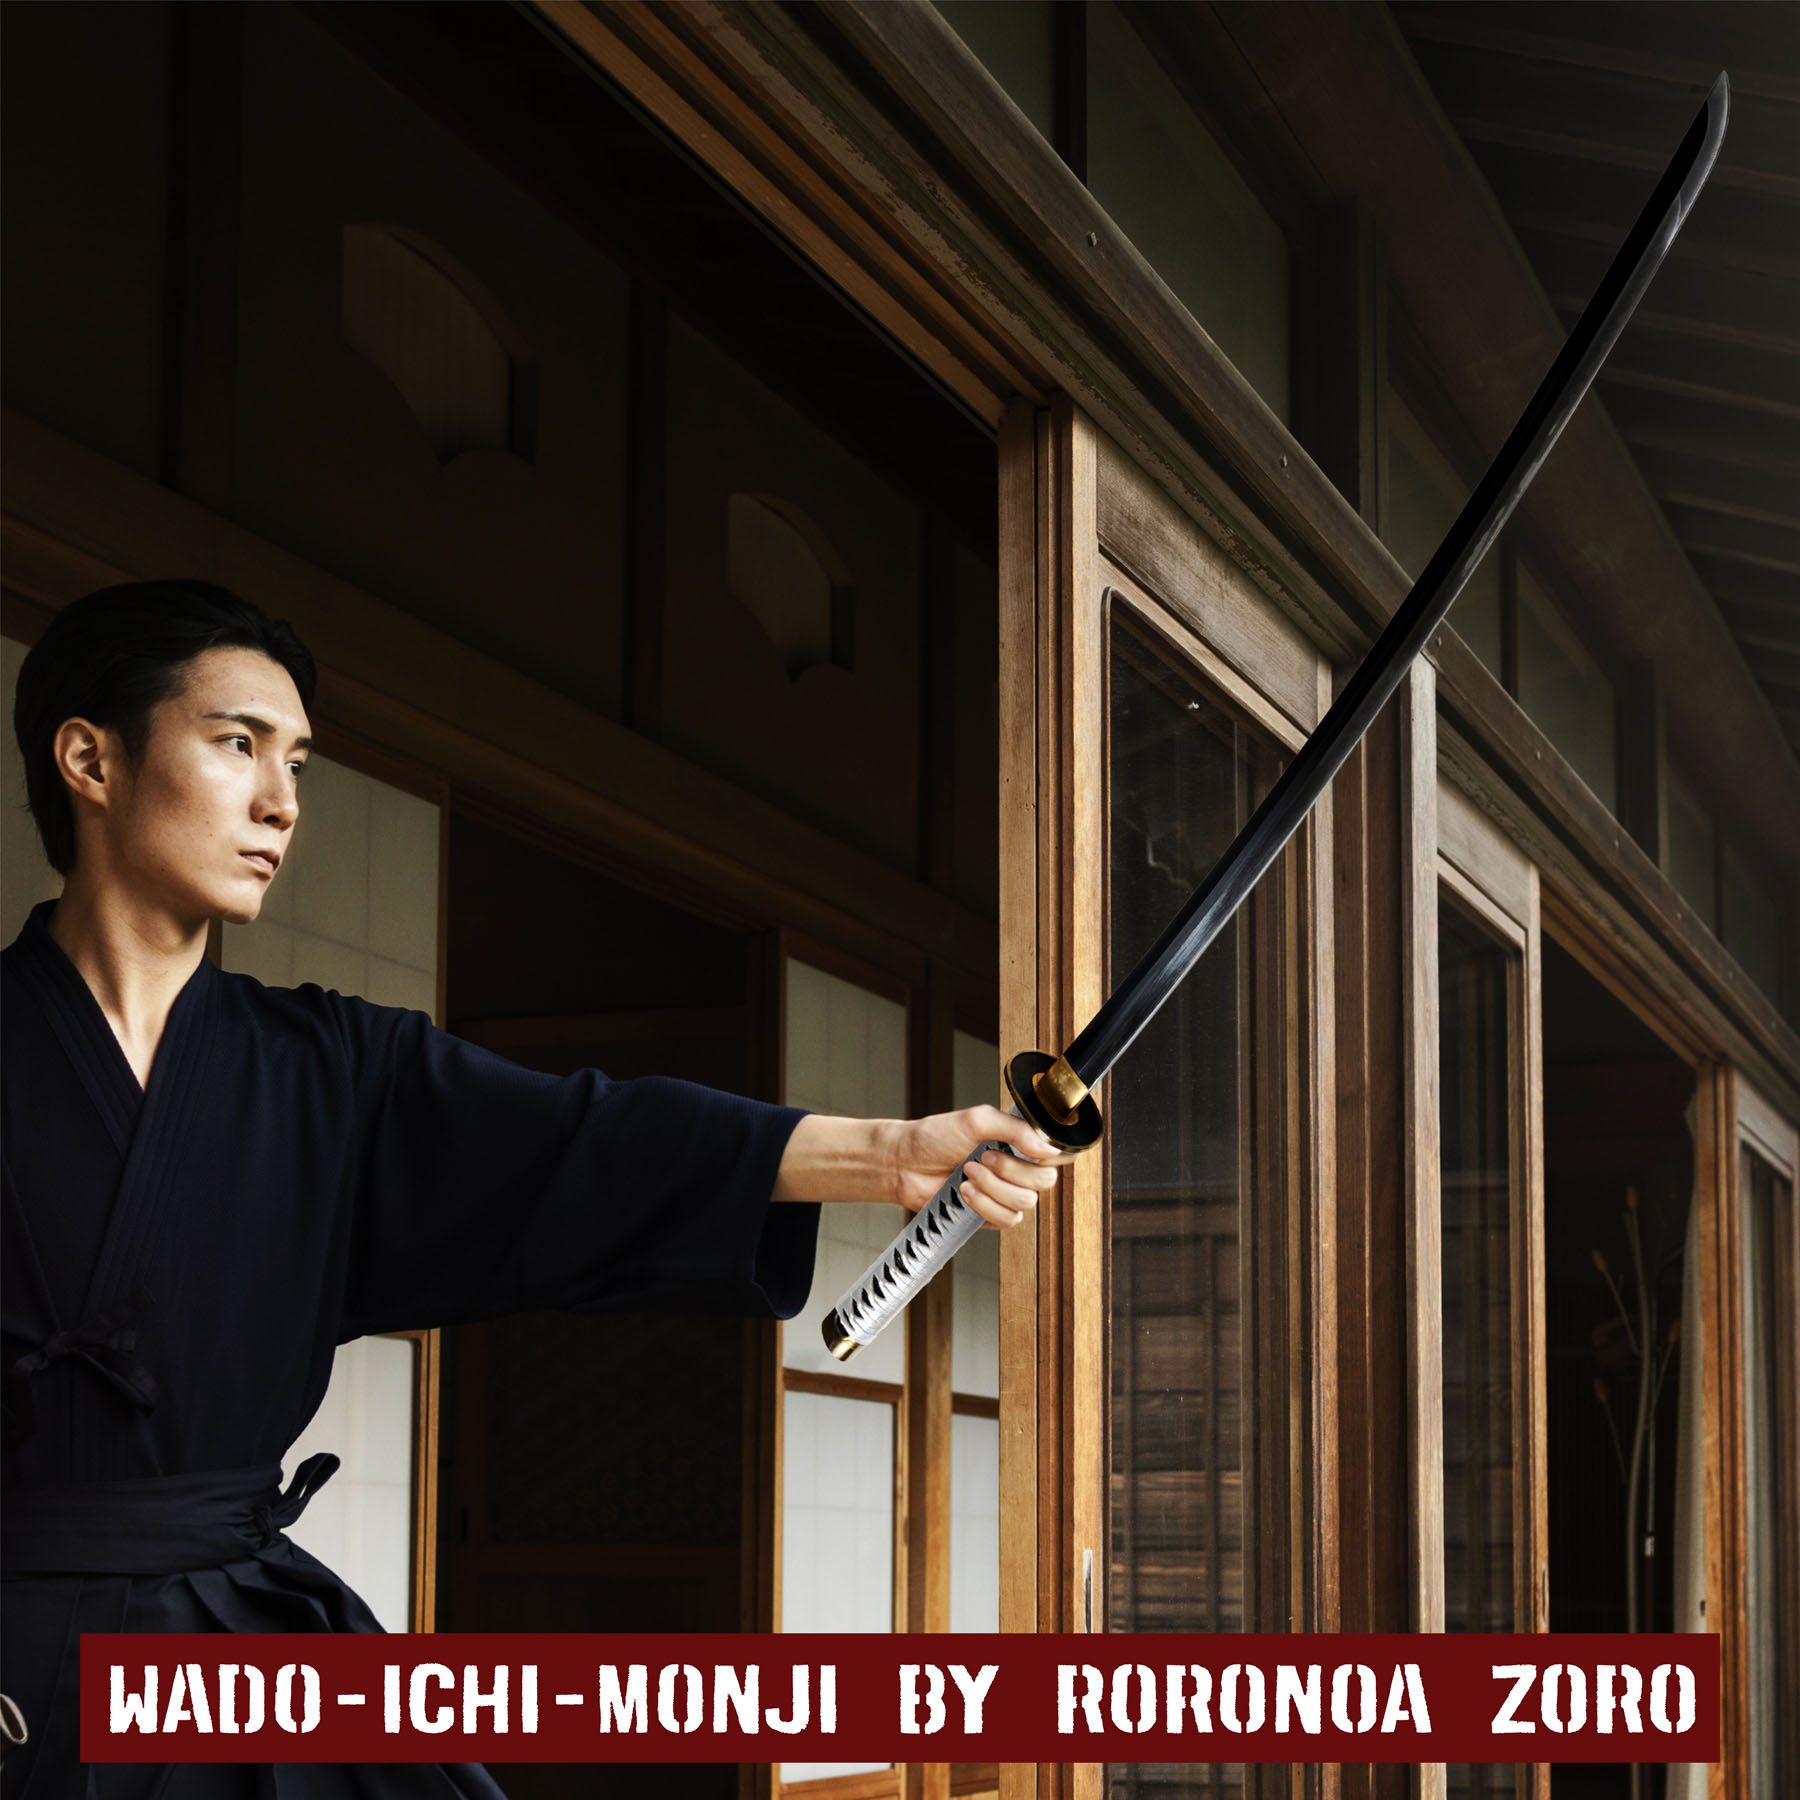 Wado-Ichi-Monji von Roronoa Zoro Katana - Handgeschmiedet